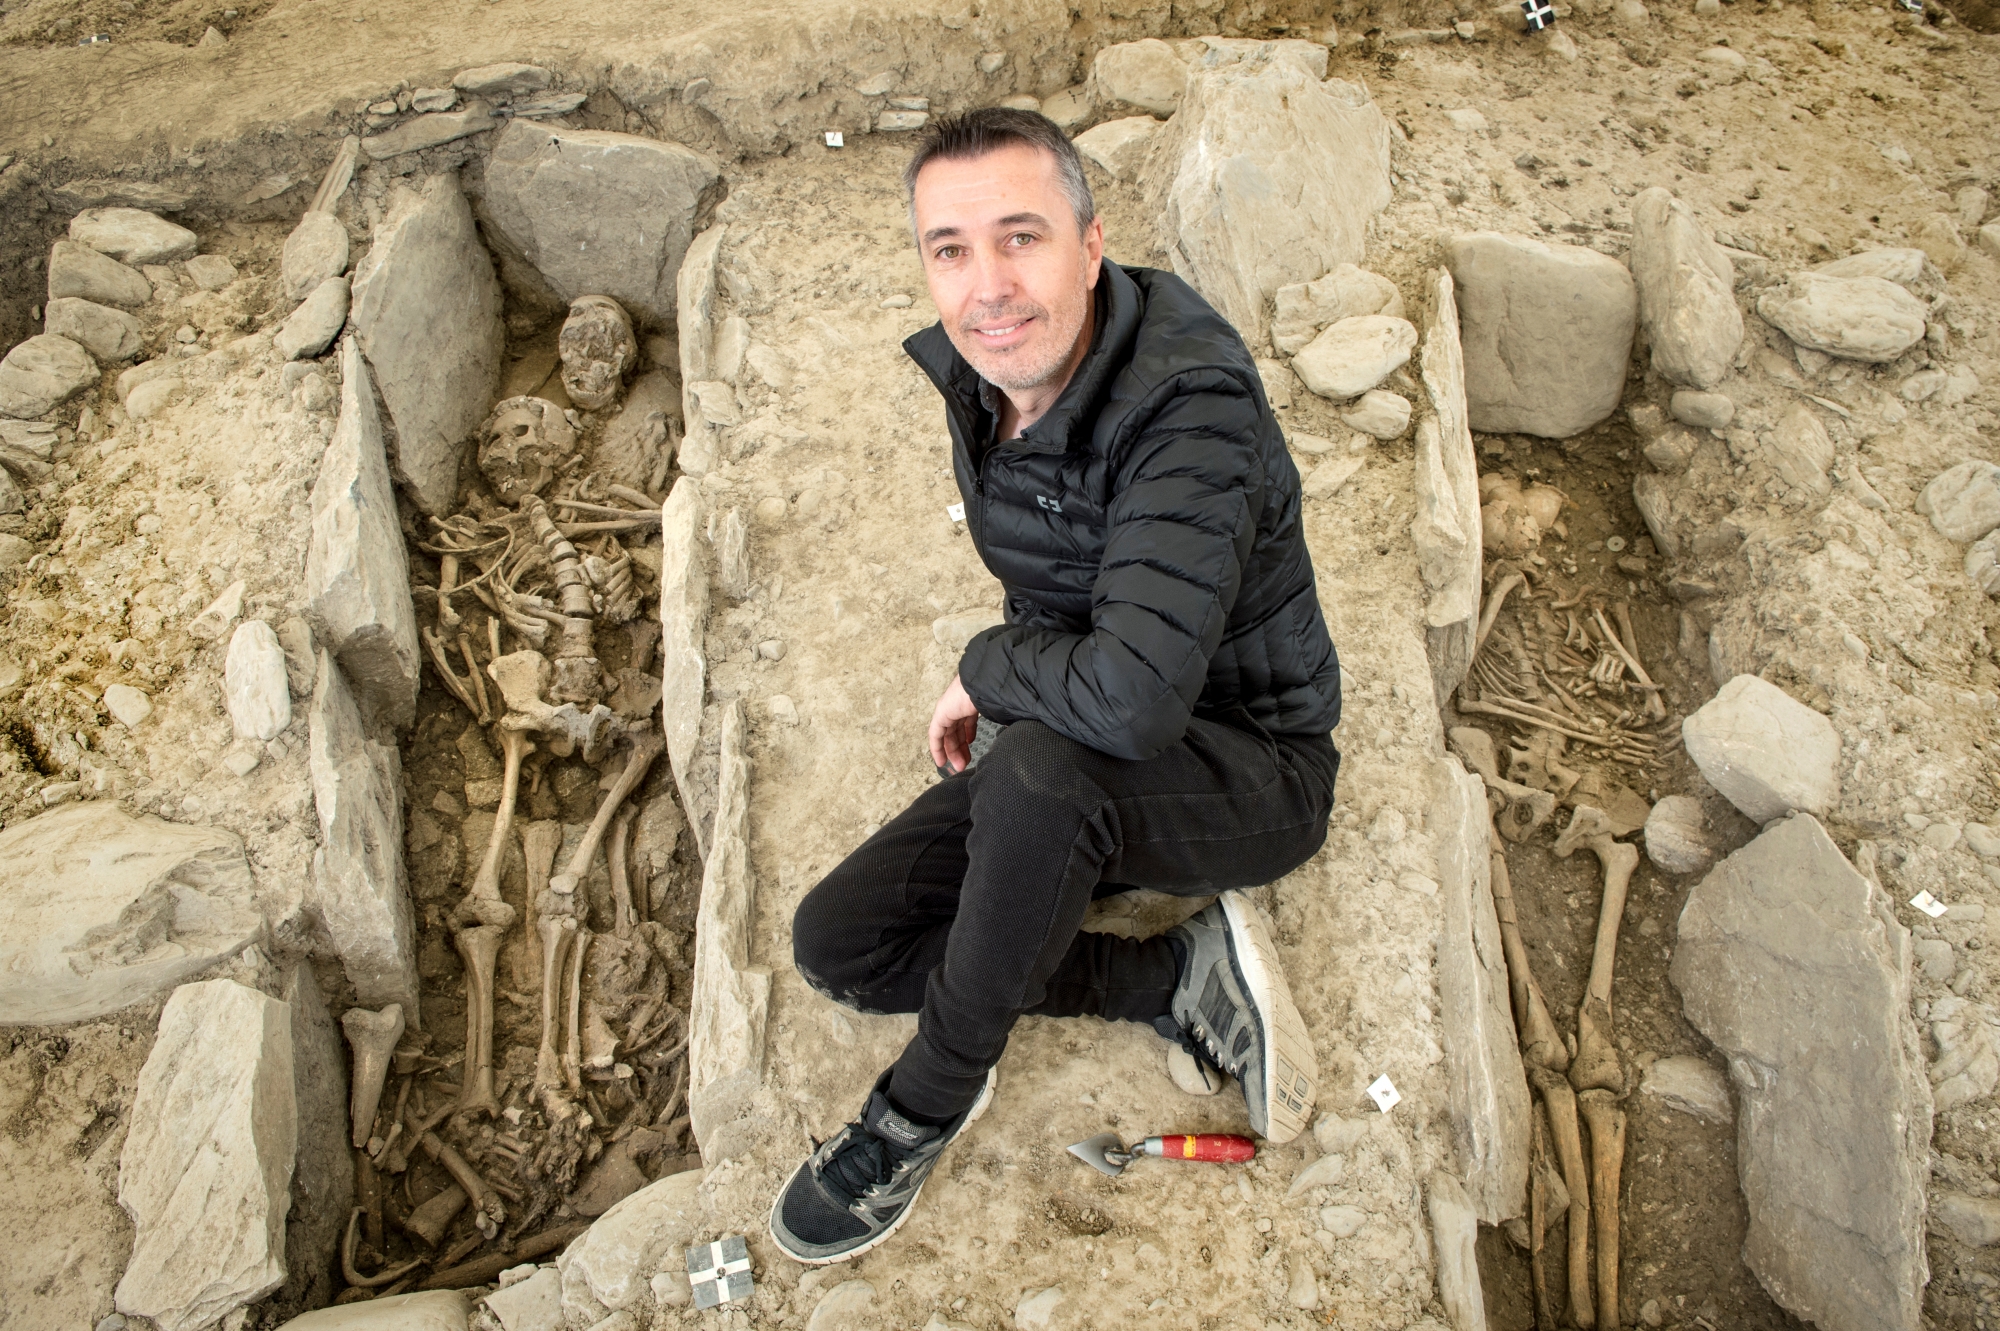 Sion - 12 mai 2017  - Fouilles archéologiques de Don Bosco - Flamur Dalloschi,archéologue,Valaistar du mois d' avril.Photo: Sabine Papilloud DALLOSCHI2